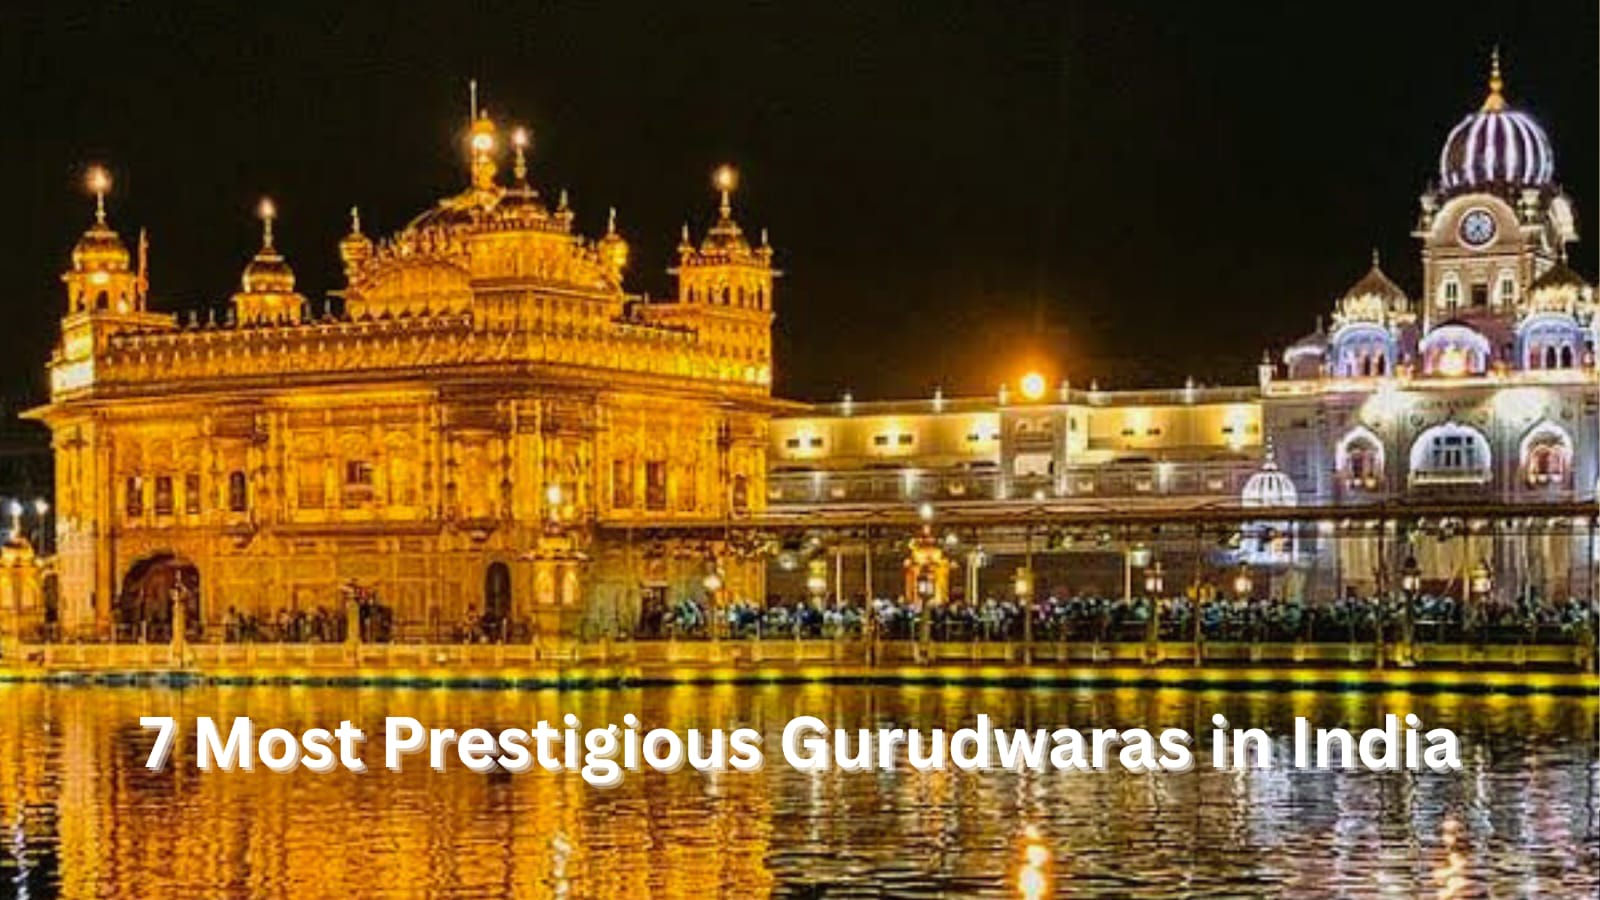 7 Most Prestigious Gurudwaras in India